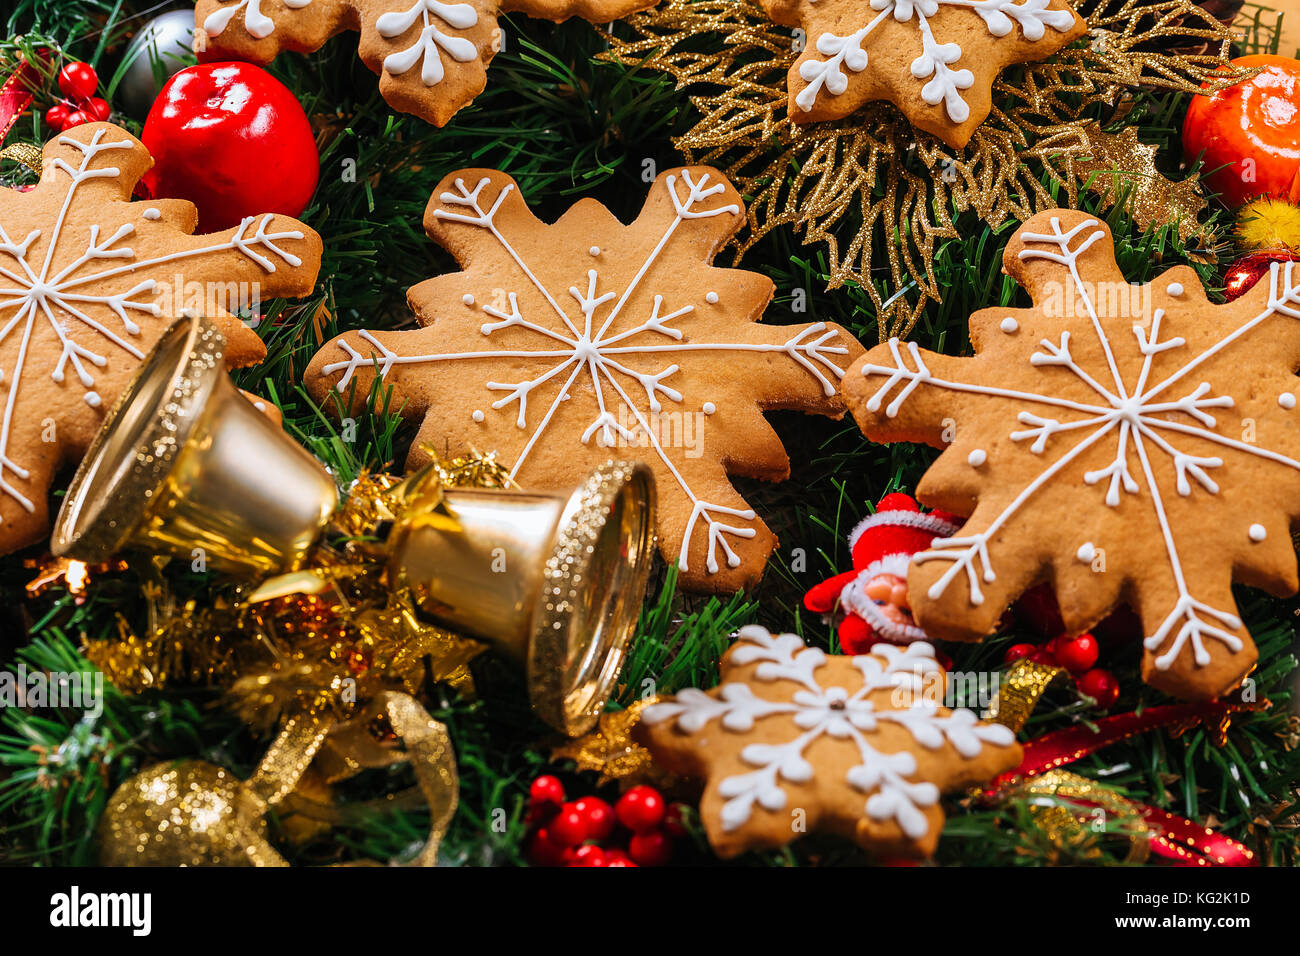 Gingerbread cookies caseros de navidad con ramas de árbol de navidad y año nuevo la decoración en la mesa con el mantel arpillera. feliz navidad tarjeta postal. Foto de stock